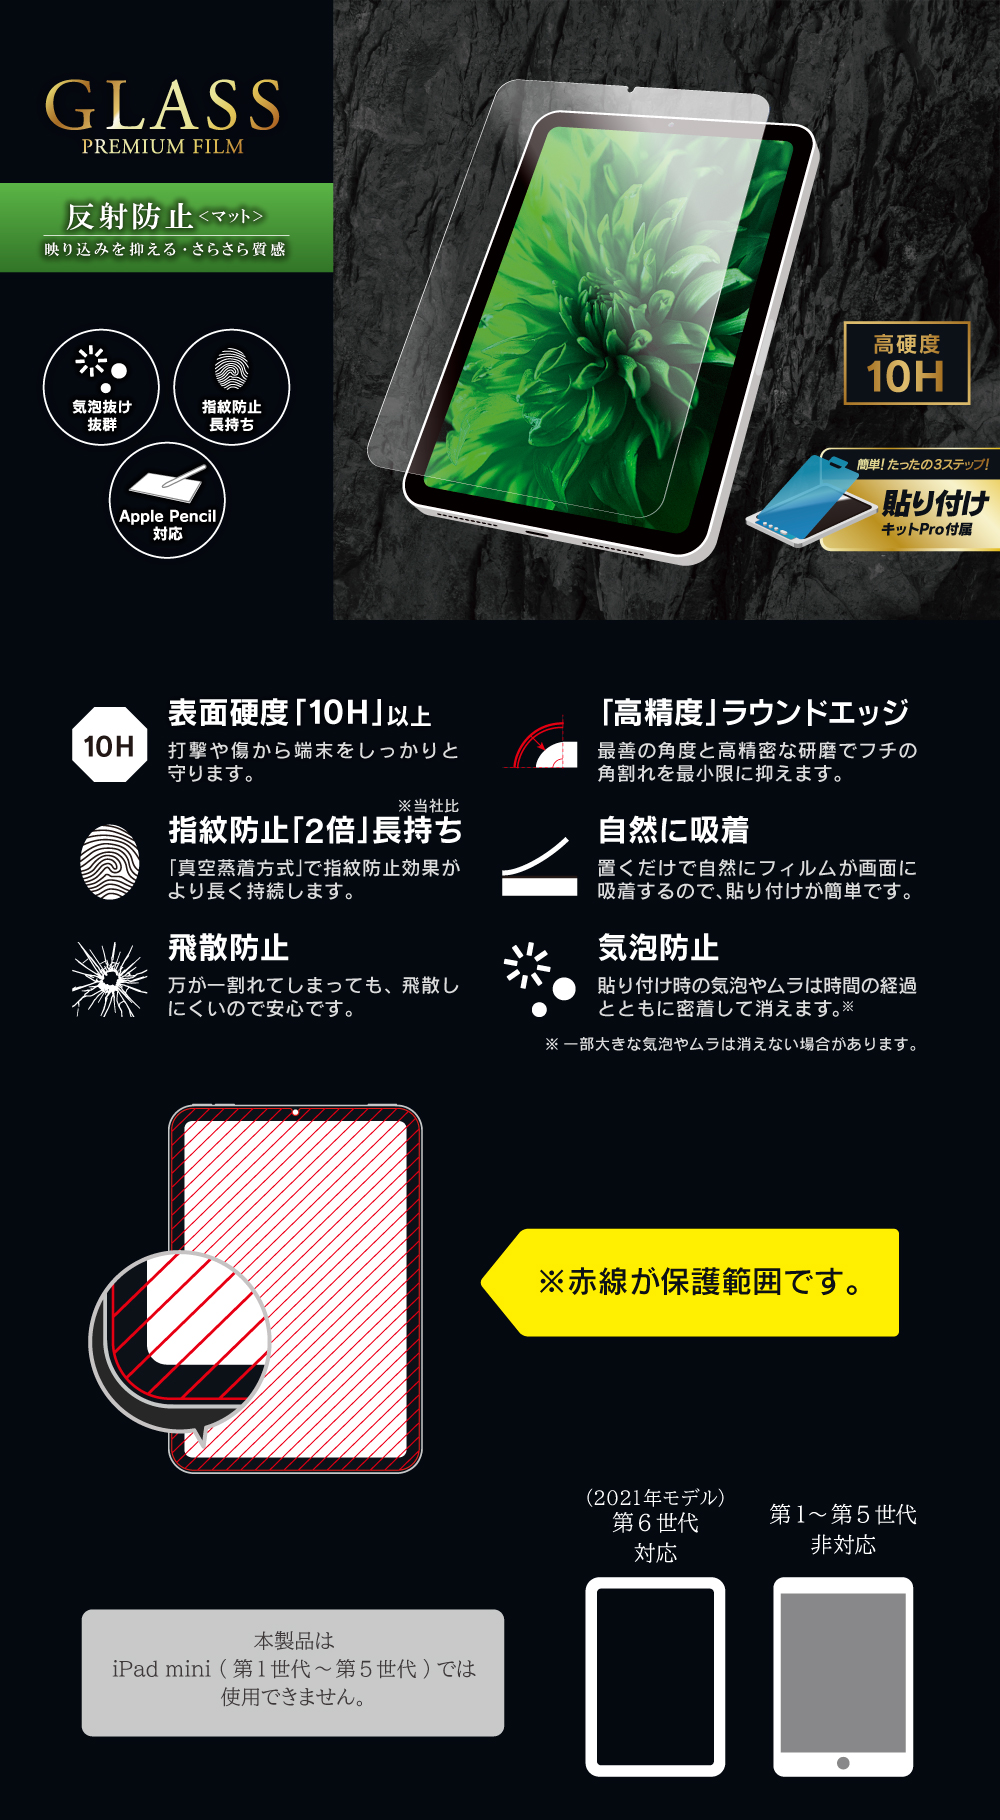 2021 iPad mini (第6世代) ガラスフィルム「GLASS PREMIUM FILM」 スタンダードサイズ マット・反射防止